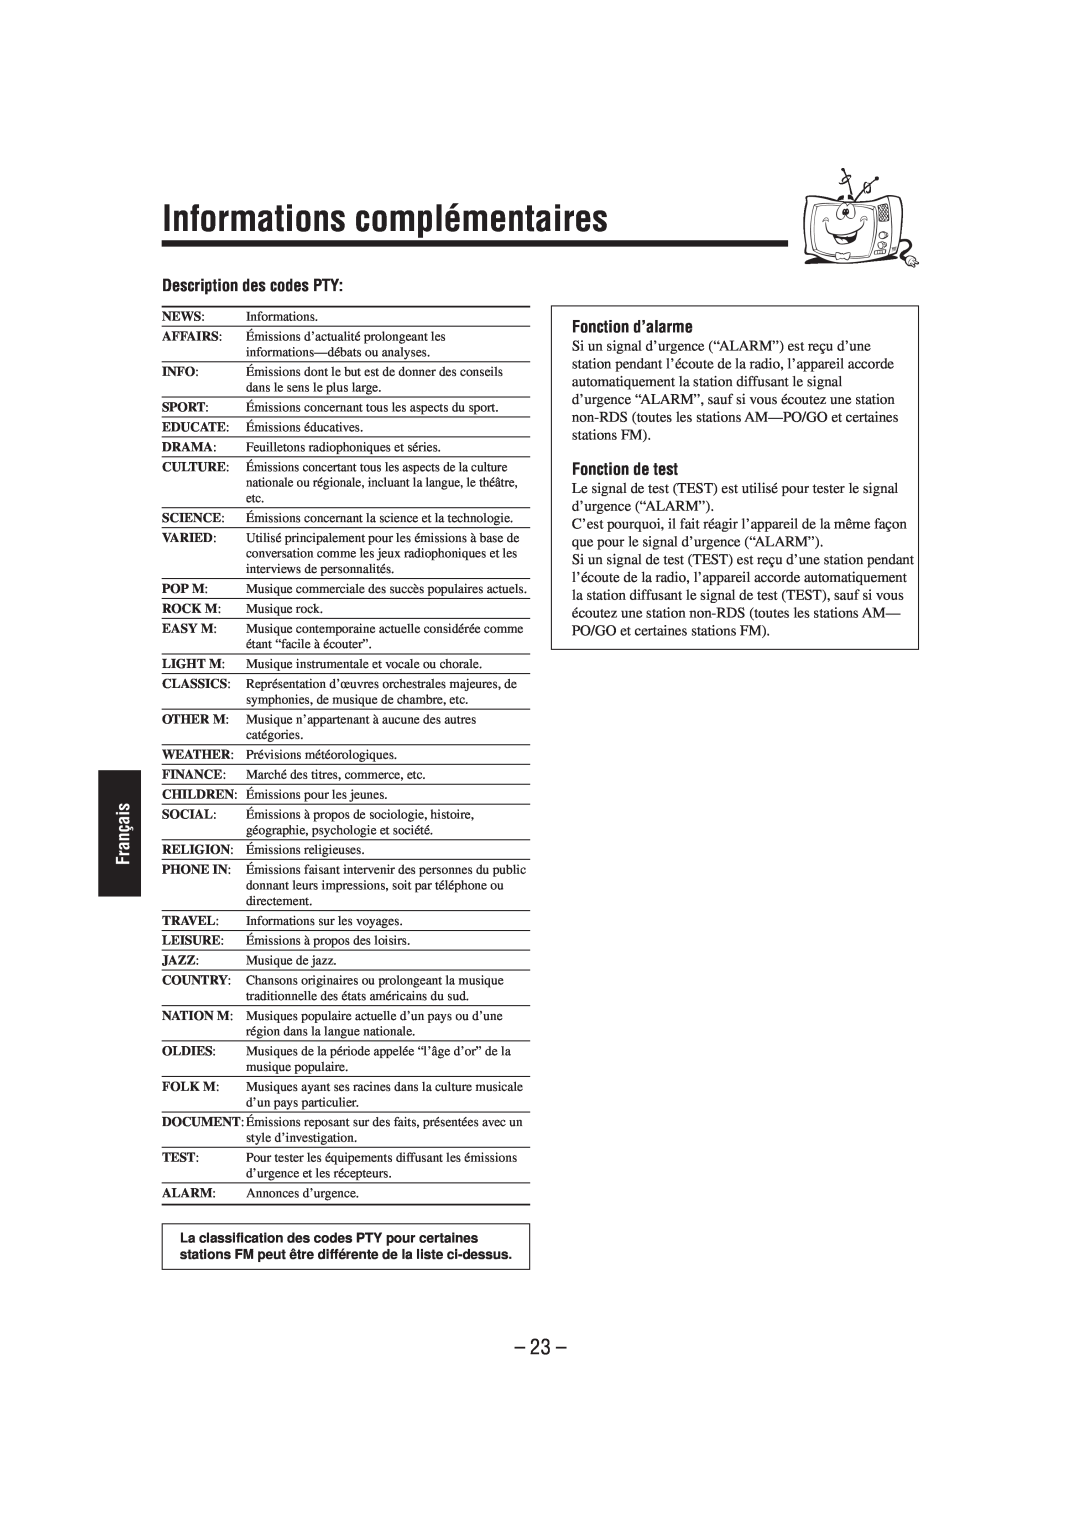 JVC UX-L40R Informations complémentaires, Description des codes PTY, Fonction d’alarme, Fonction de test, 23, Français 